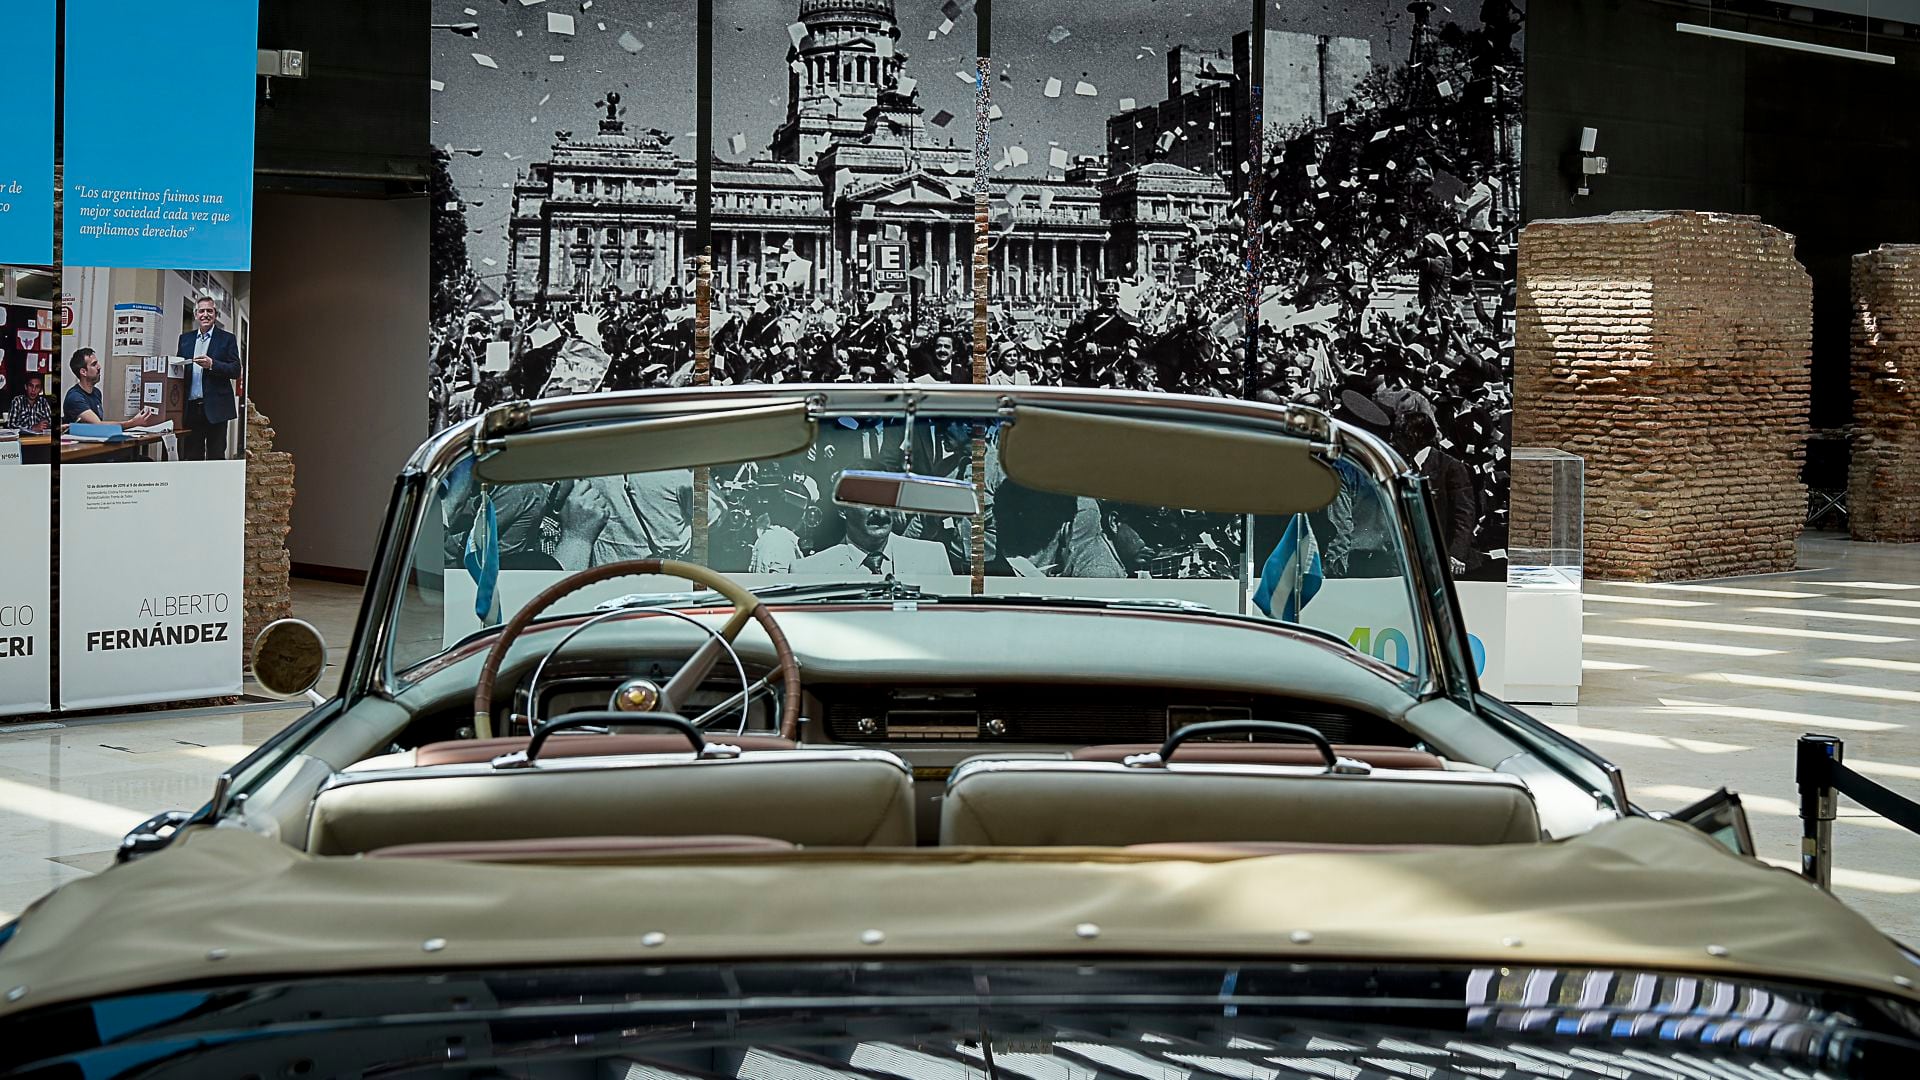 Frente al Cadillac presidencial se puede observar una gran imagen de la asunción de Alfonsín (Crédito: Gustavo Gavotti)